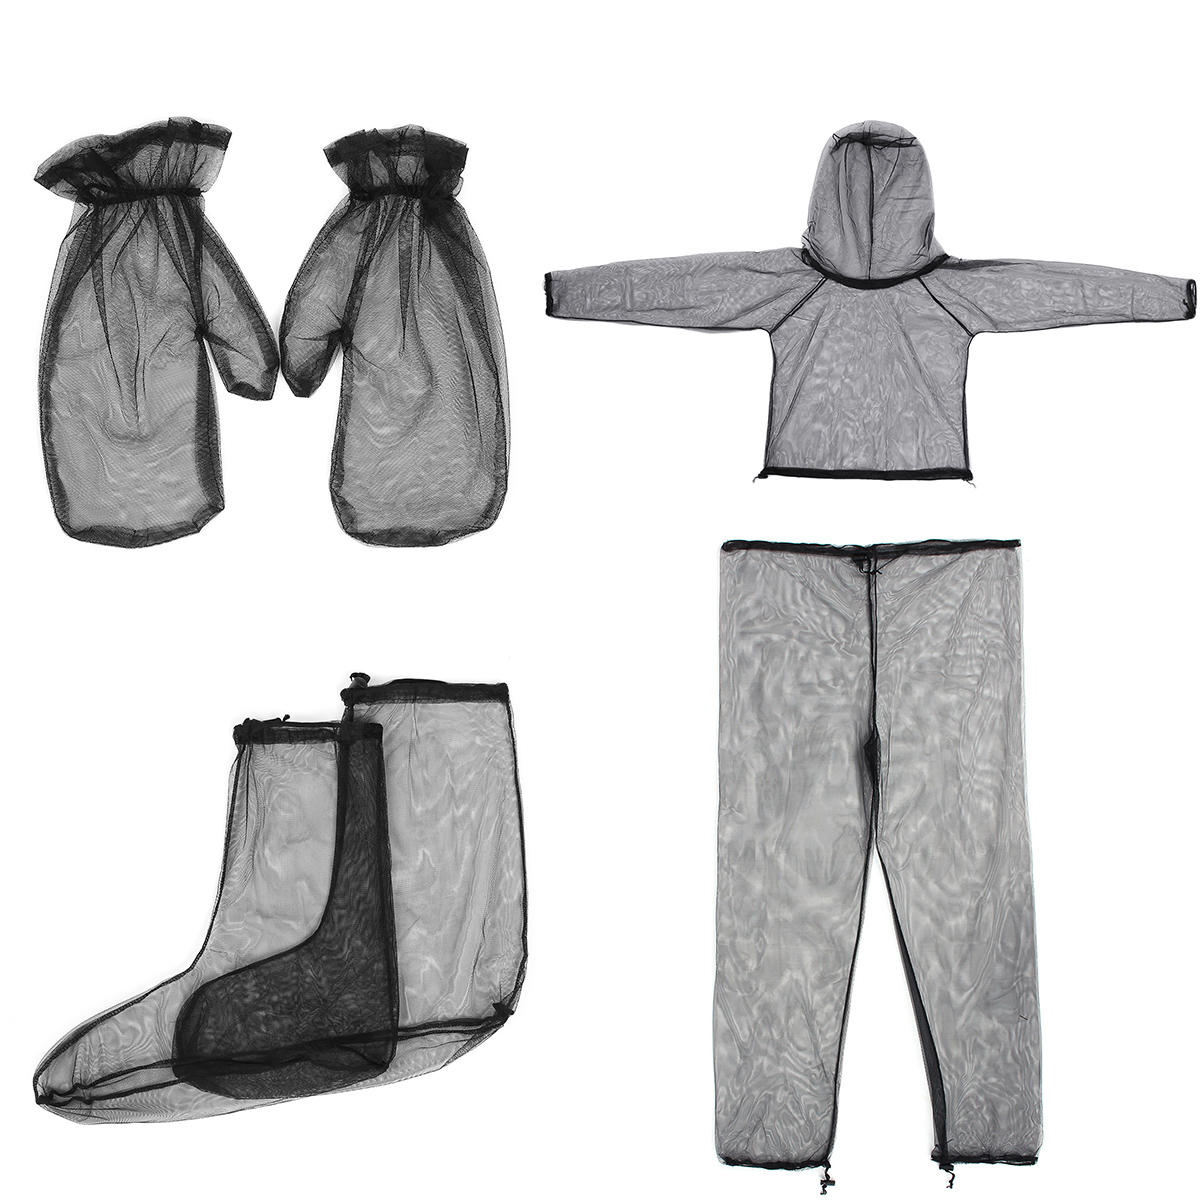 Lekka odzież podróżna i kempingowa na zewnątrz z siatki o wysokiej gęstości składająca się z kurtki, spodni, rękawiczek i skarpet, chroniąca przed komarami.